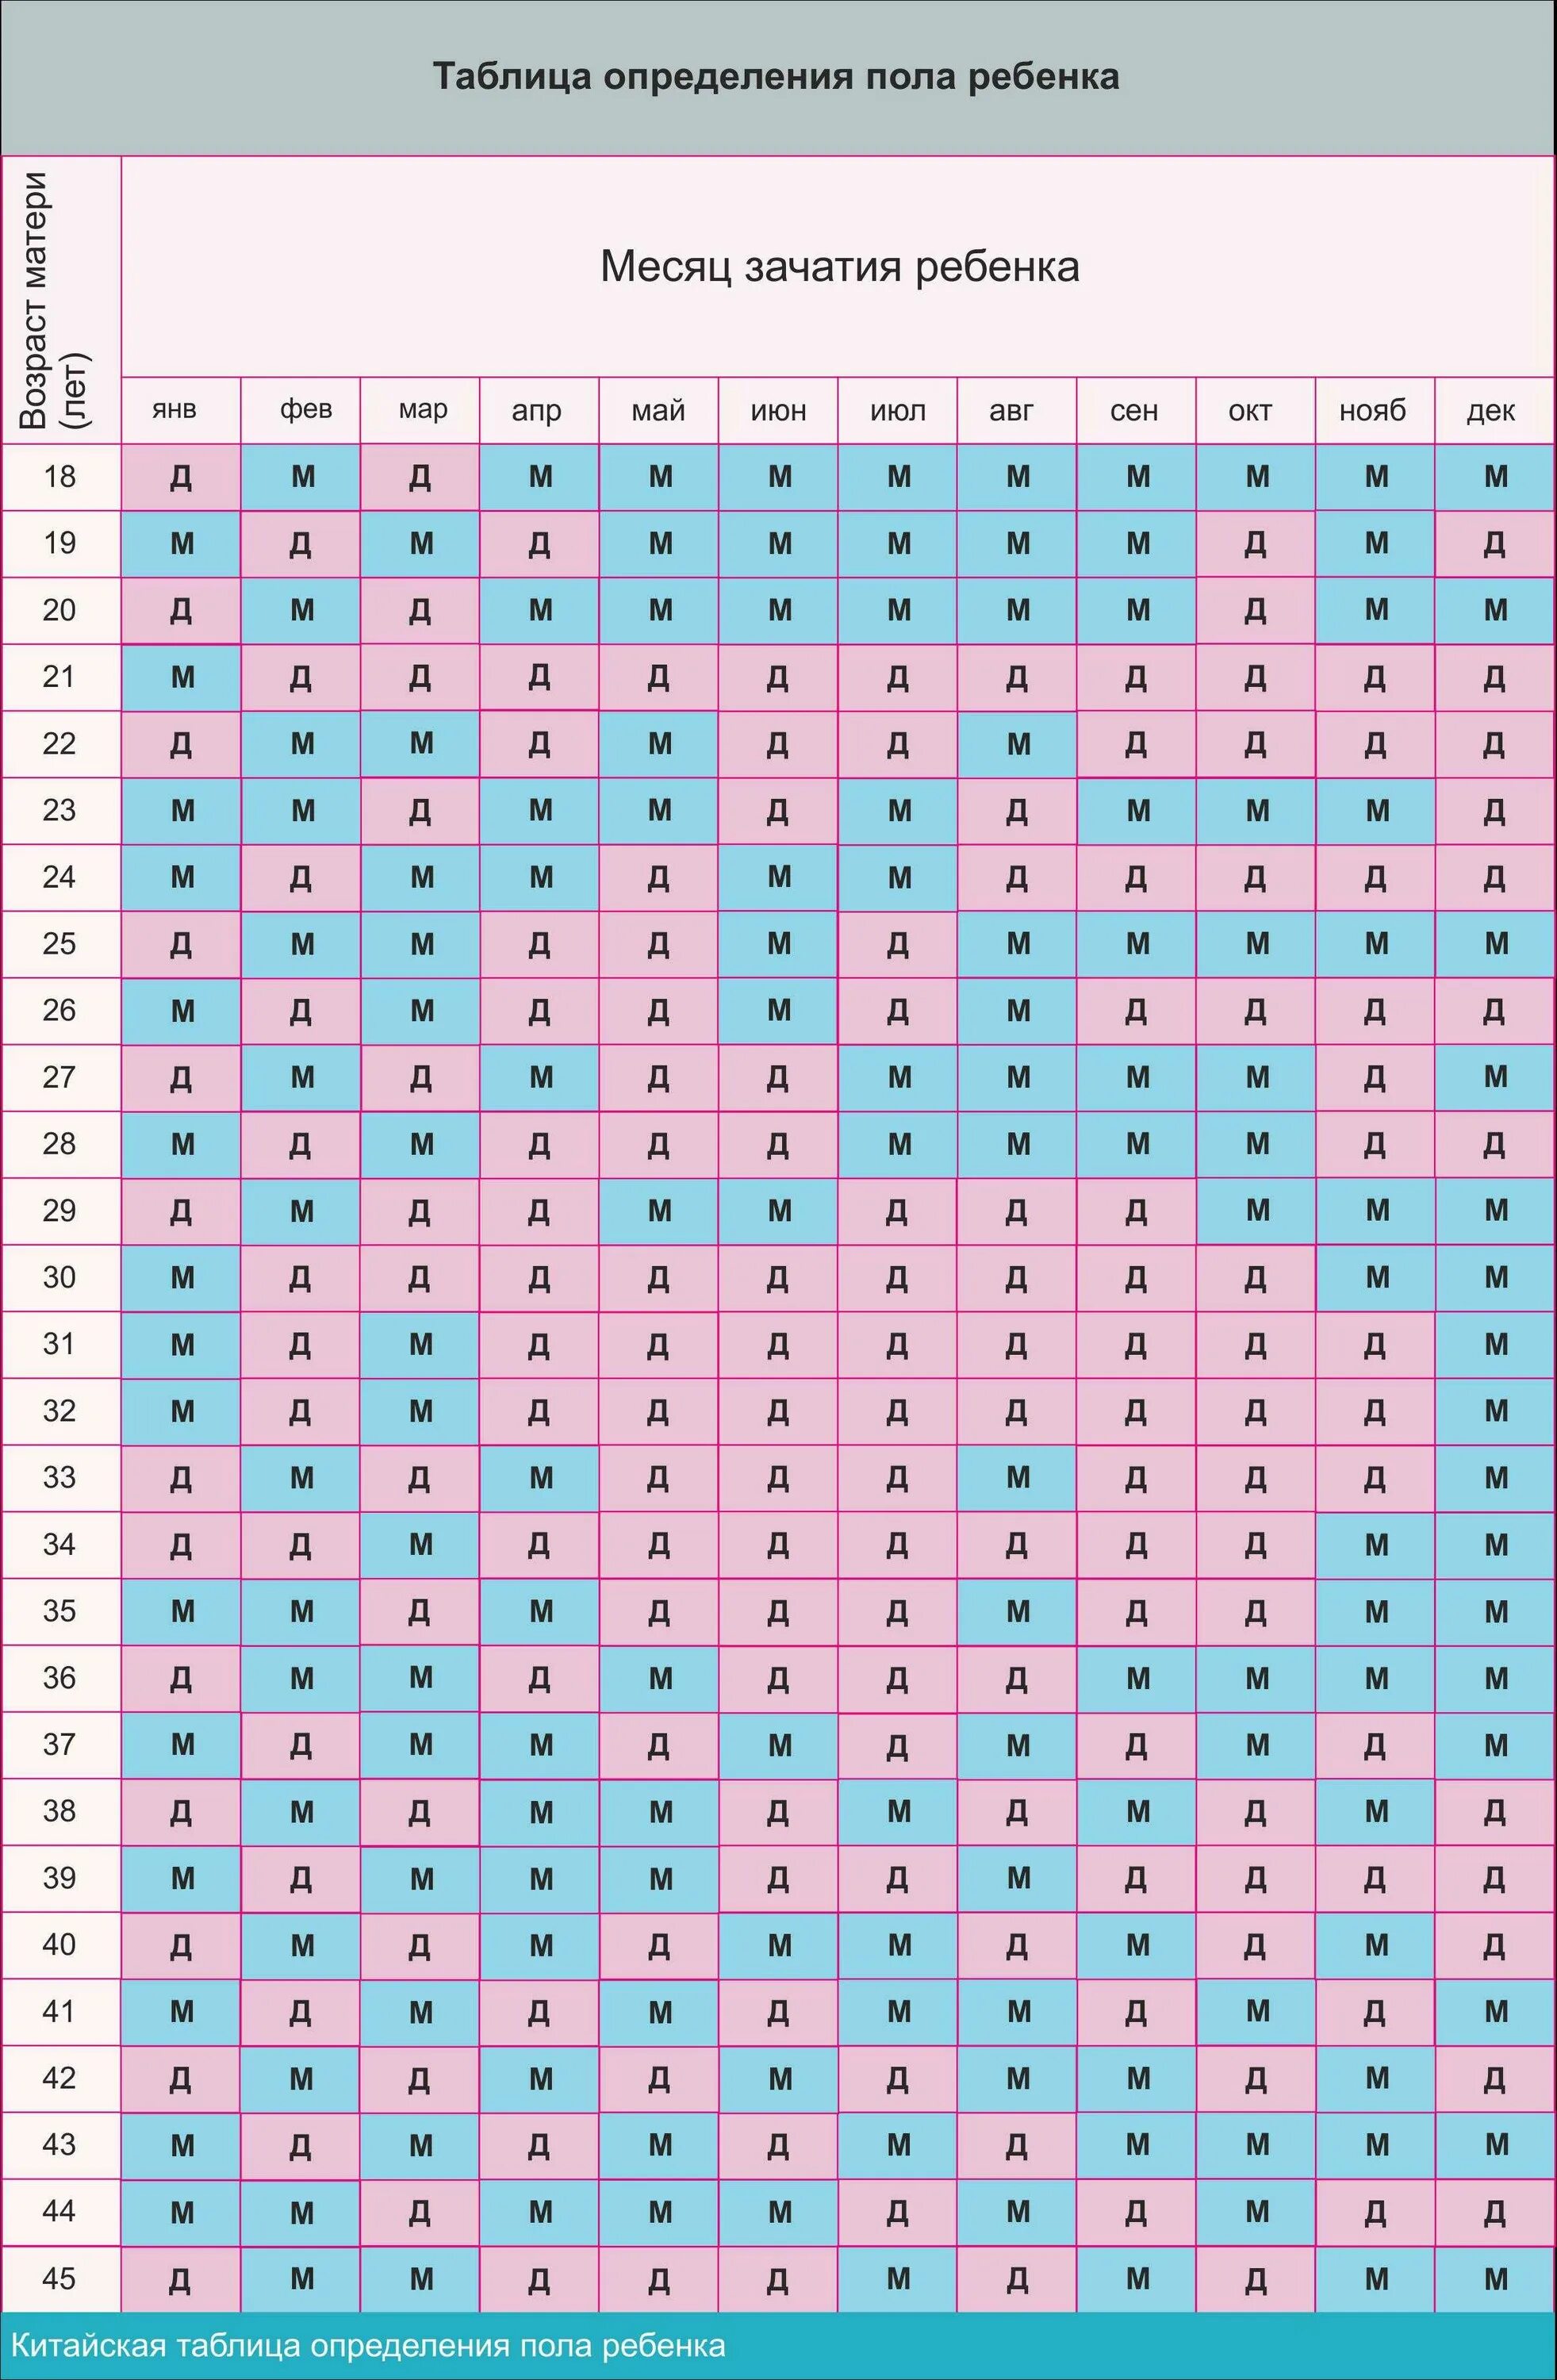 Таблица беременности пол ребенка 2022. Древне китайская таблица вычисления пола ребенка. Таблица как узнать пол ребенка по возрасту матери и месяцу зачатия. Японская таблица определения пола ребенка по возрасту матери и отца.